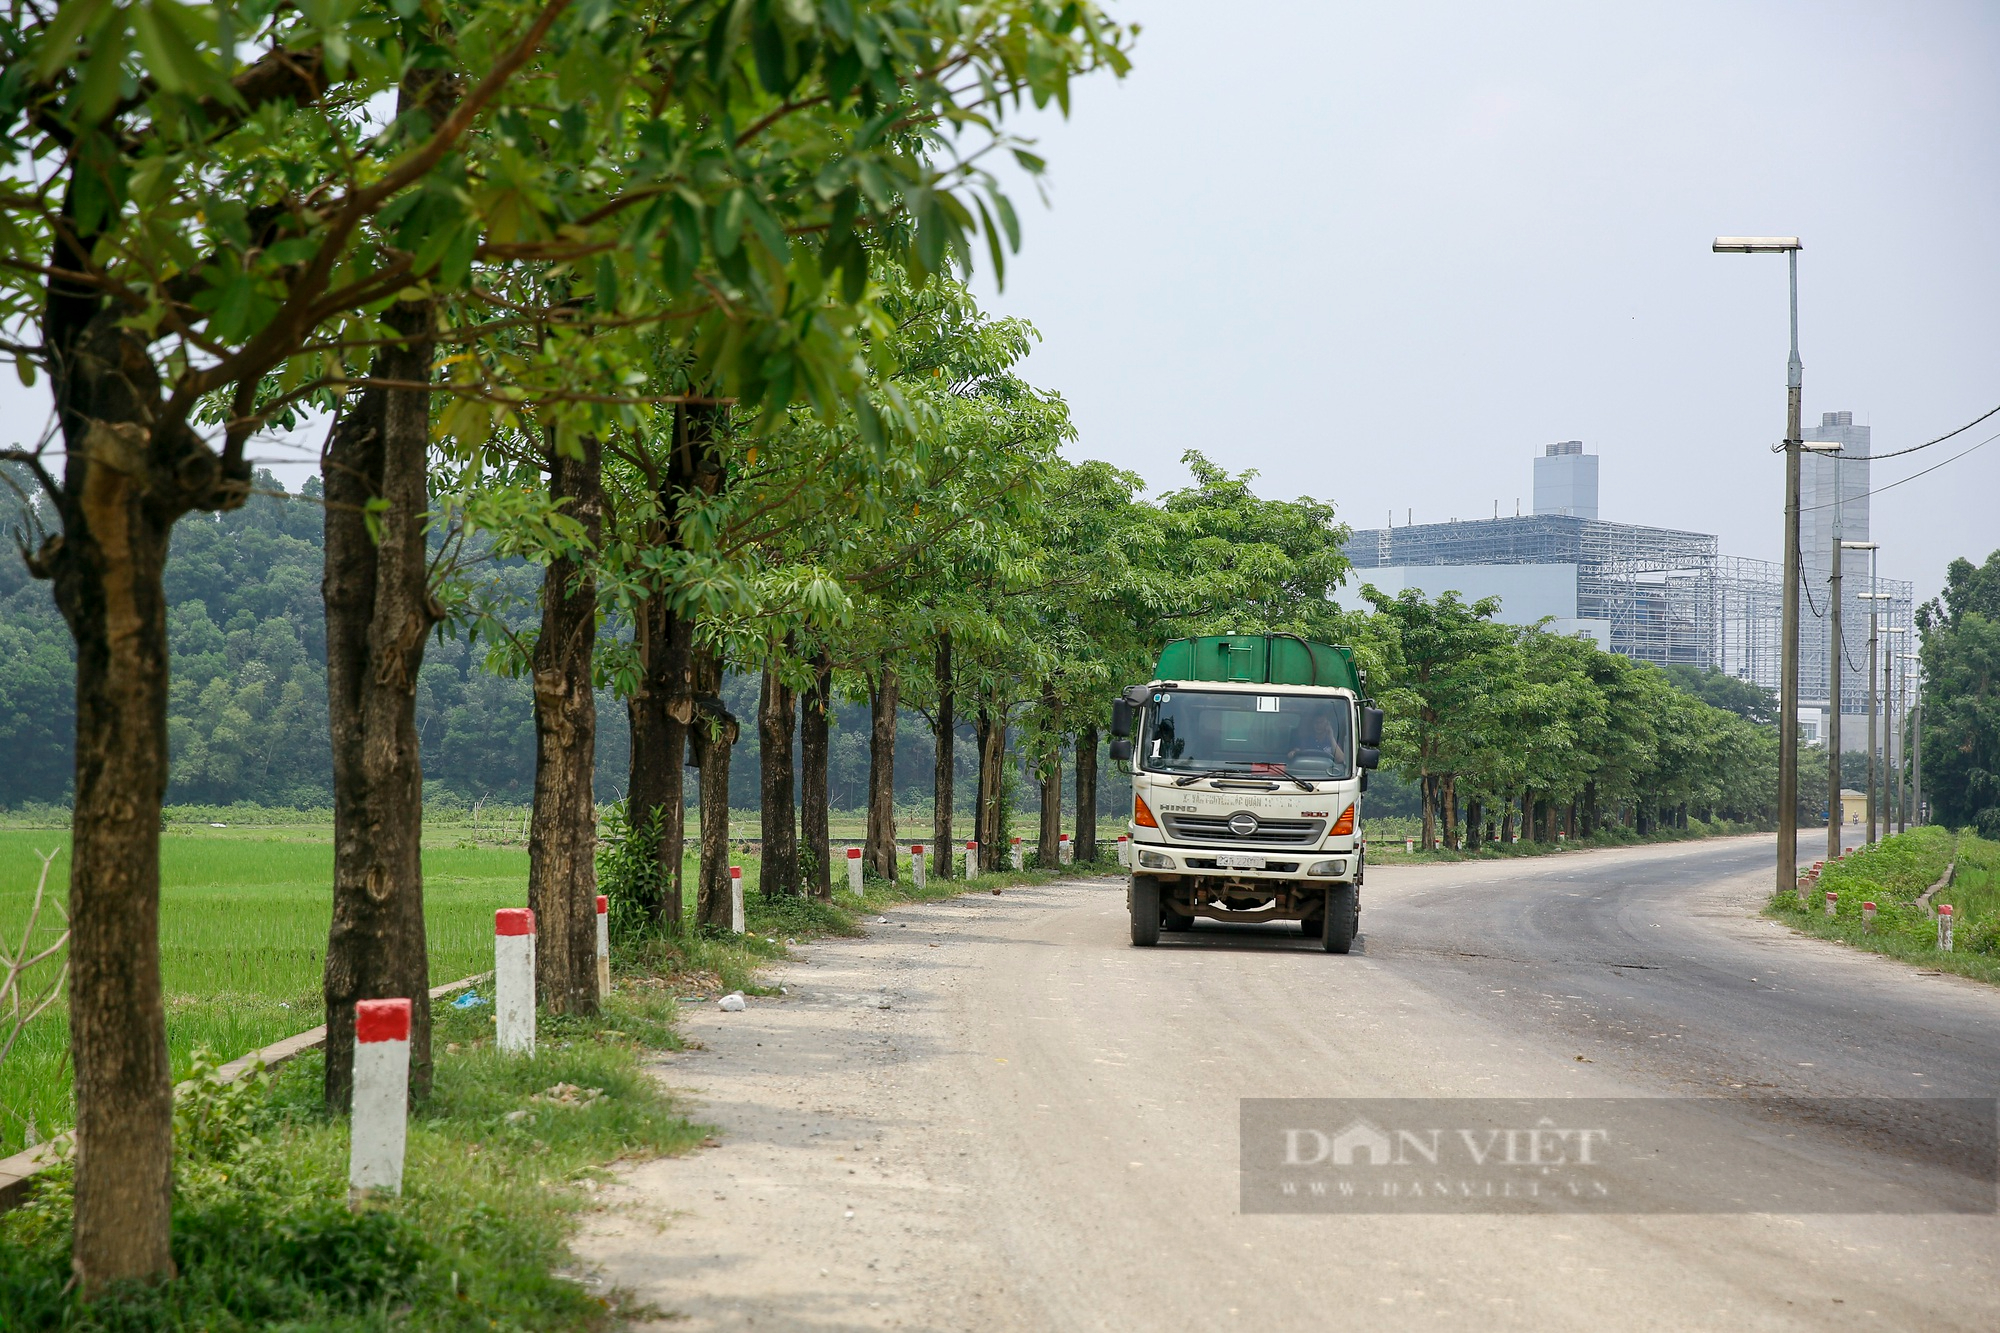 100 cây hoa sữa chuyển từ hồ Tây lên bãi rác Nam Sơn phát triển mạnh sau 3 năm trồng để khử mùi - Ảnh 3.